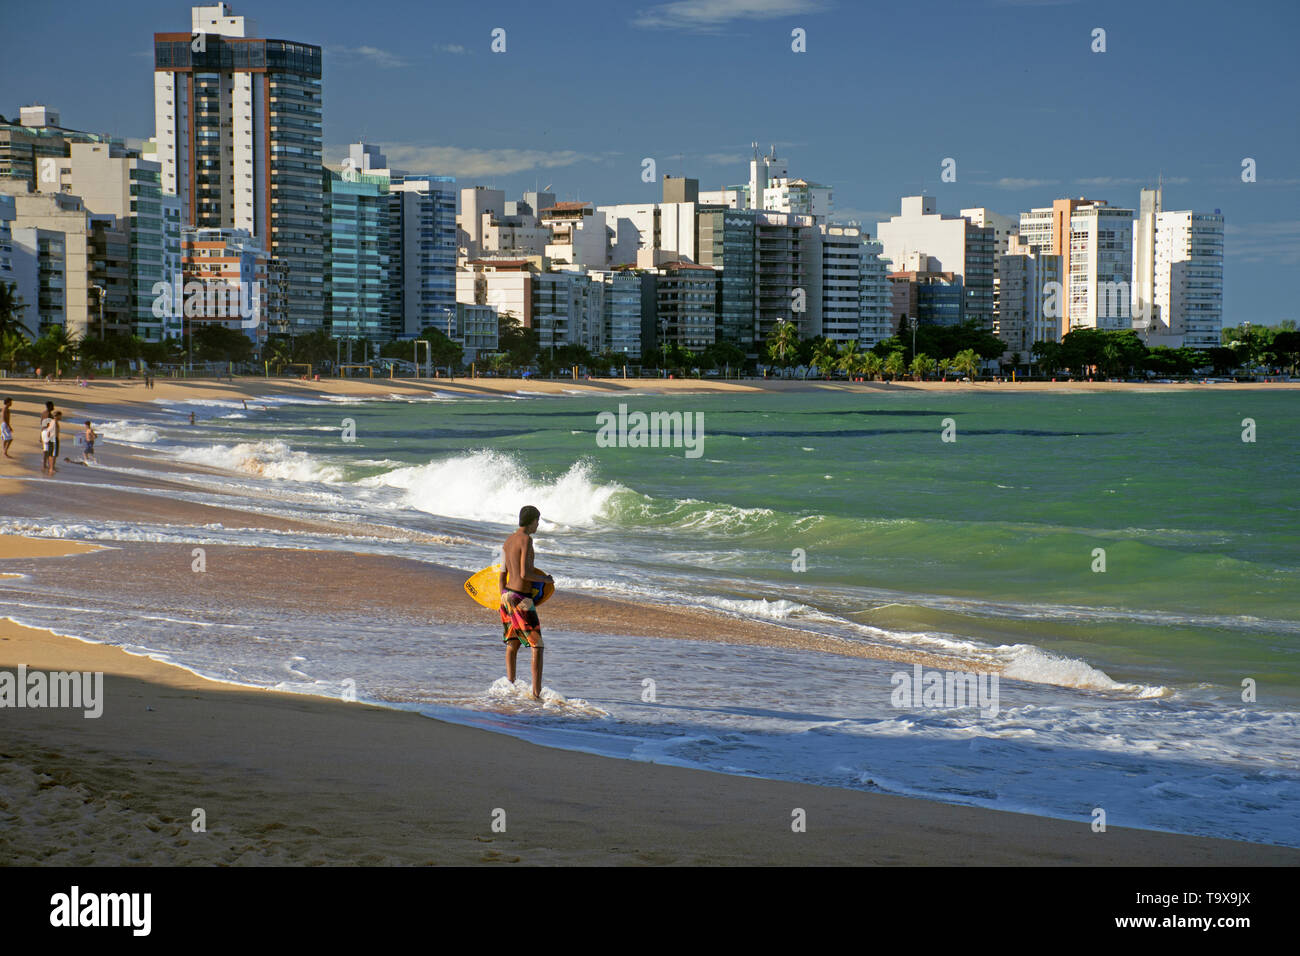 Surfer enjoys an urban beach, Praia da Costa, Vila Velha, Espirito Santo, Brazil Stock Photo